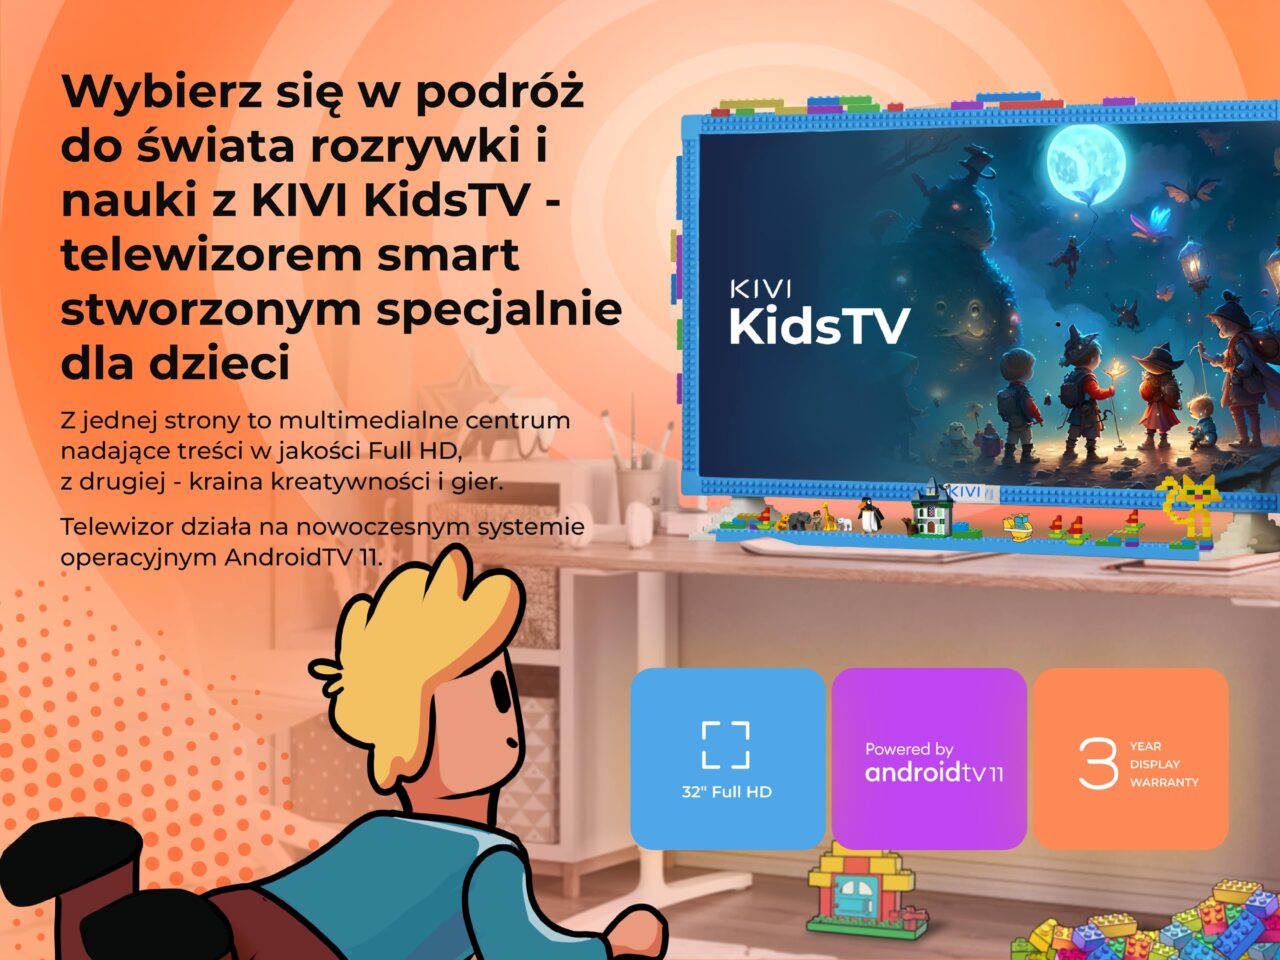 Reklama telewizora KIVI KidsTV dla dzieci, z grafiką przedstawiającą kolorową scenę z bajki na ekranie, otoczoną zabawkami na półce w pokoju dziecięcym.